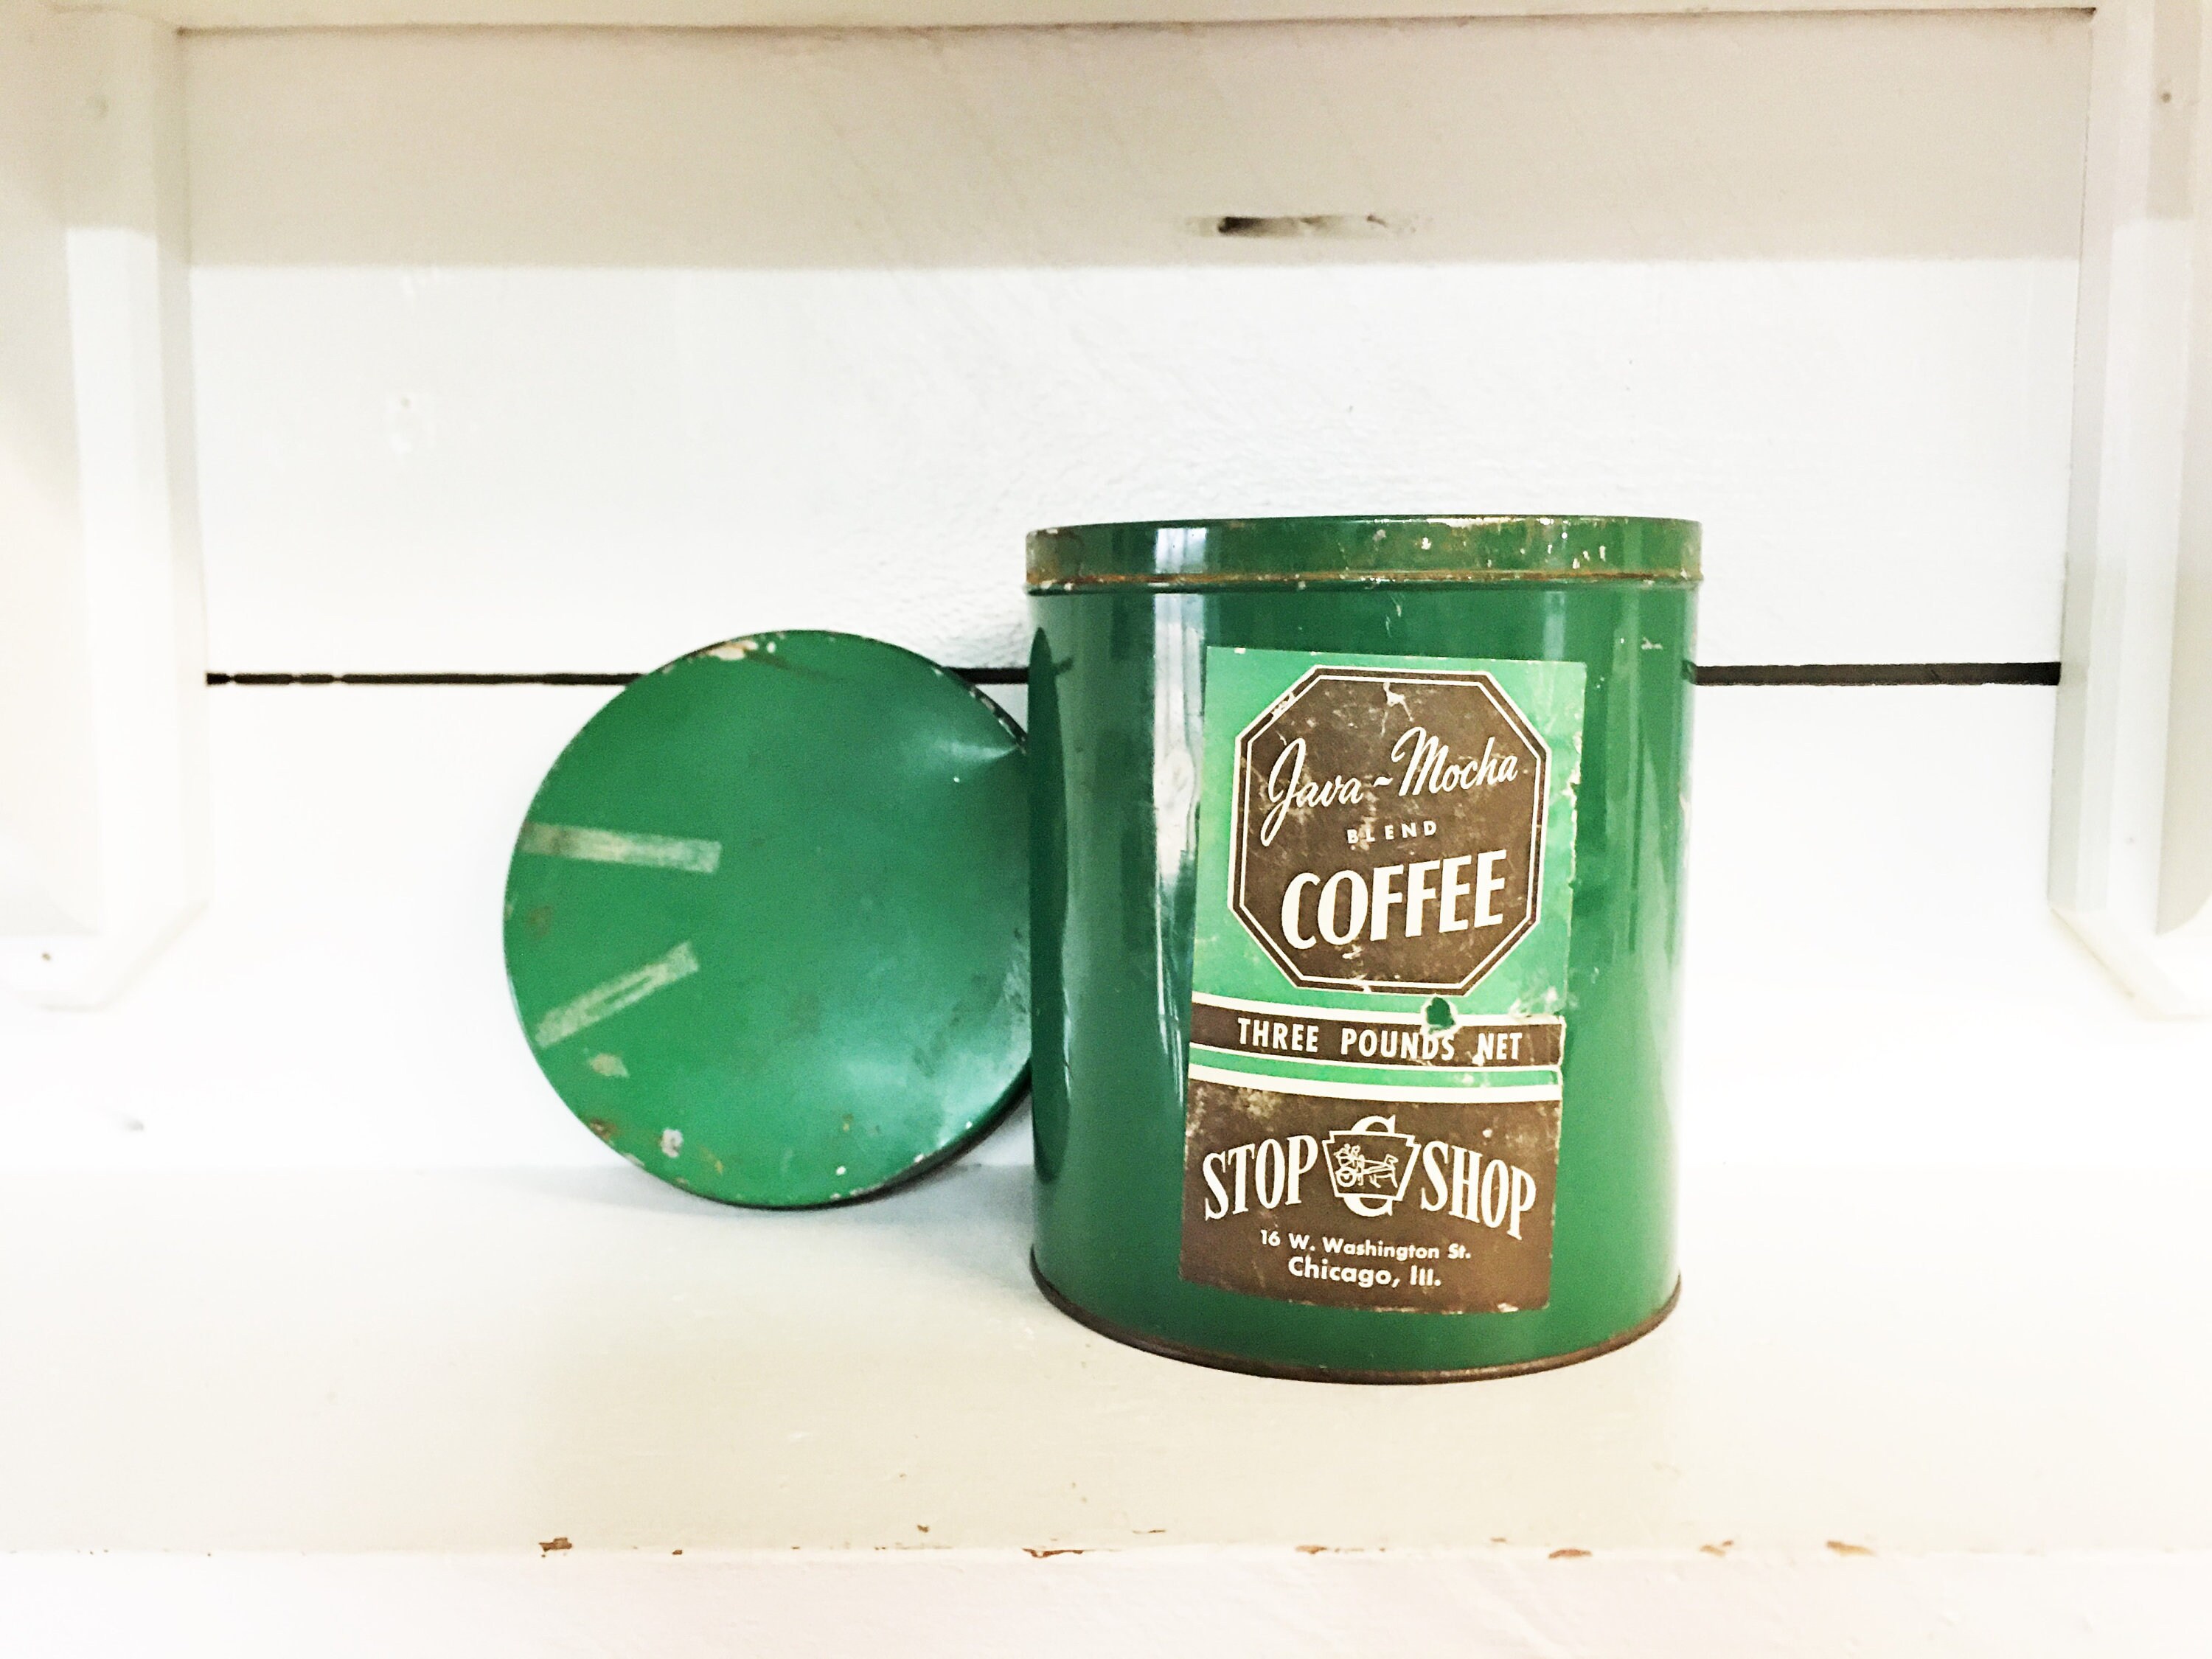 Vintage Java-Mocha Blend Coffee Tin/Farmhouse Kitchen Collectible Stop & Shop Chicago, Il Tin/Decorative Tin